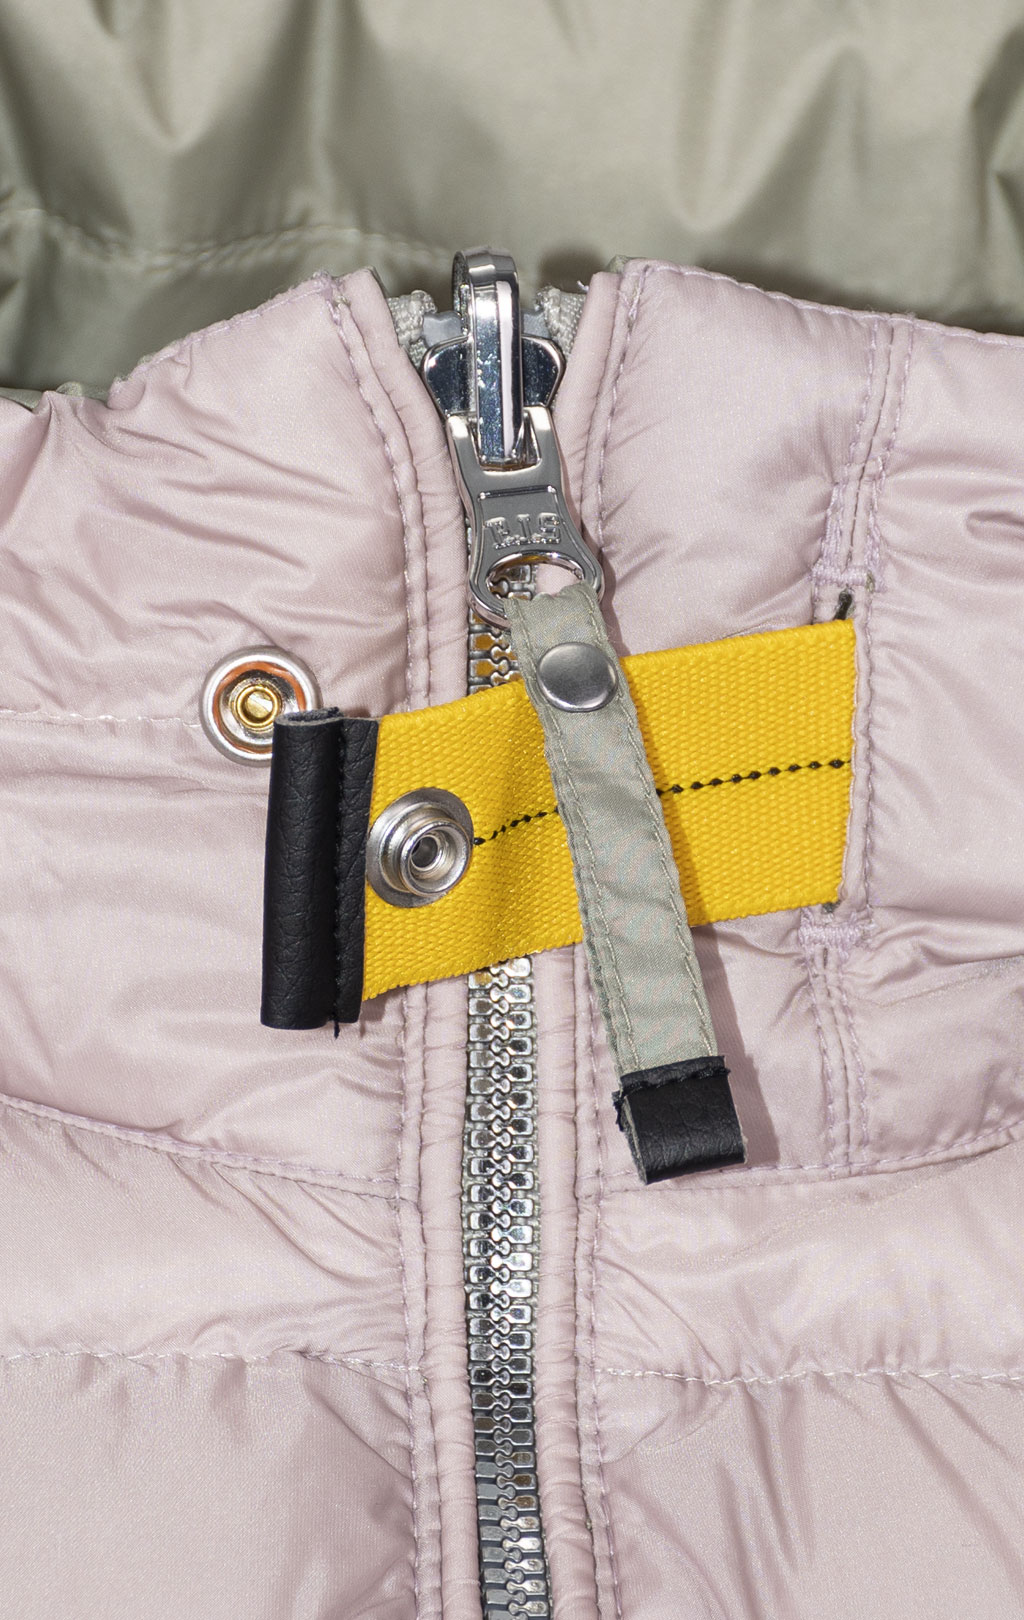 Женская куртка-пуховик лёгкая PARAJUMPERS LETIZIA REVERSO двухсторонняя SS 24 sage-misty lilac 